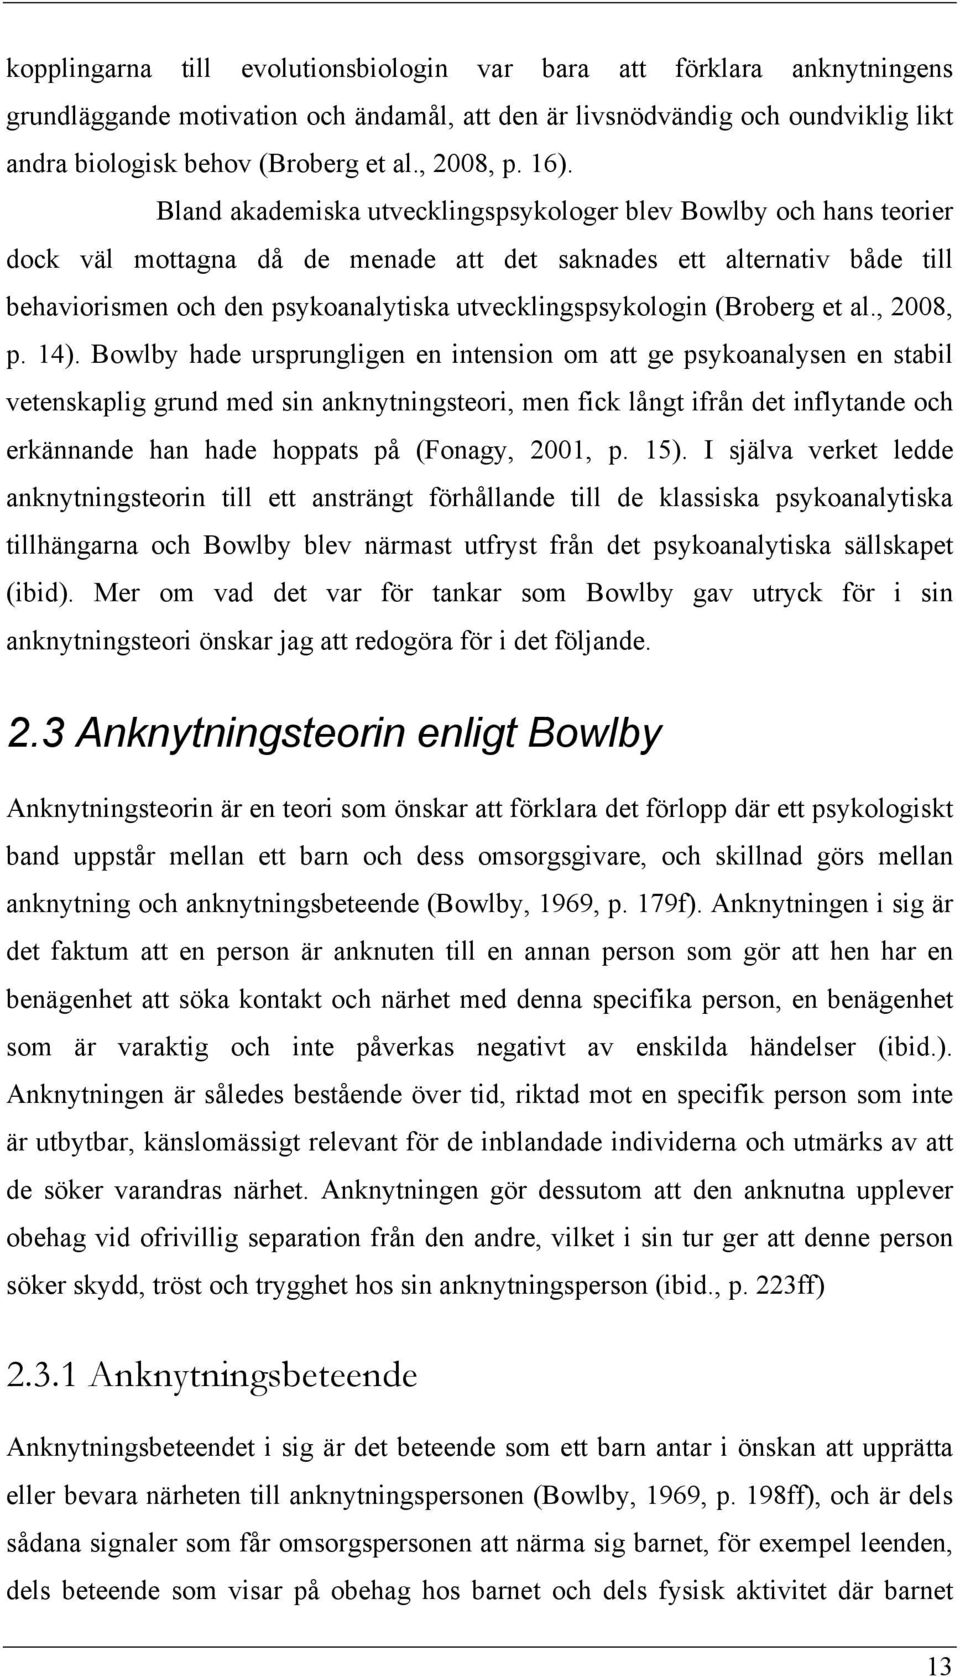 Bland akademiska utvecklingspsykologer blev Bowlby och hans teorier dock väl mottagna då de menade att det saknades ett alternativ både till behaviorismen och den psykoanalytiska